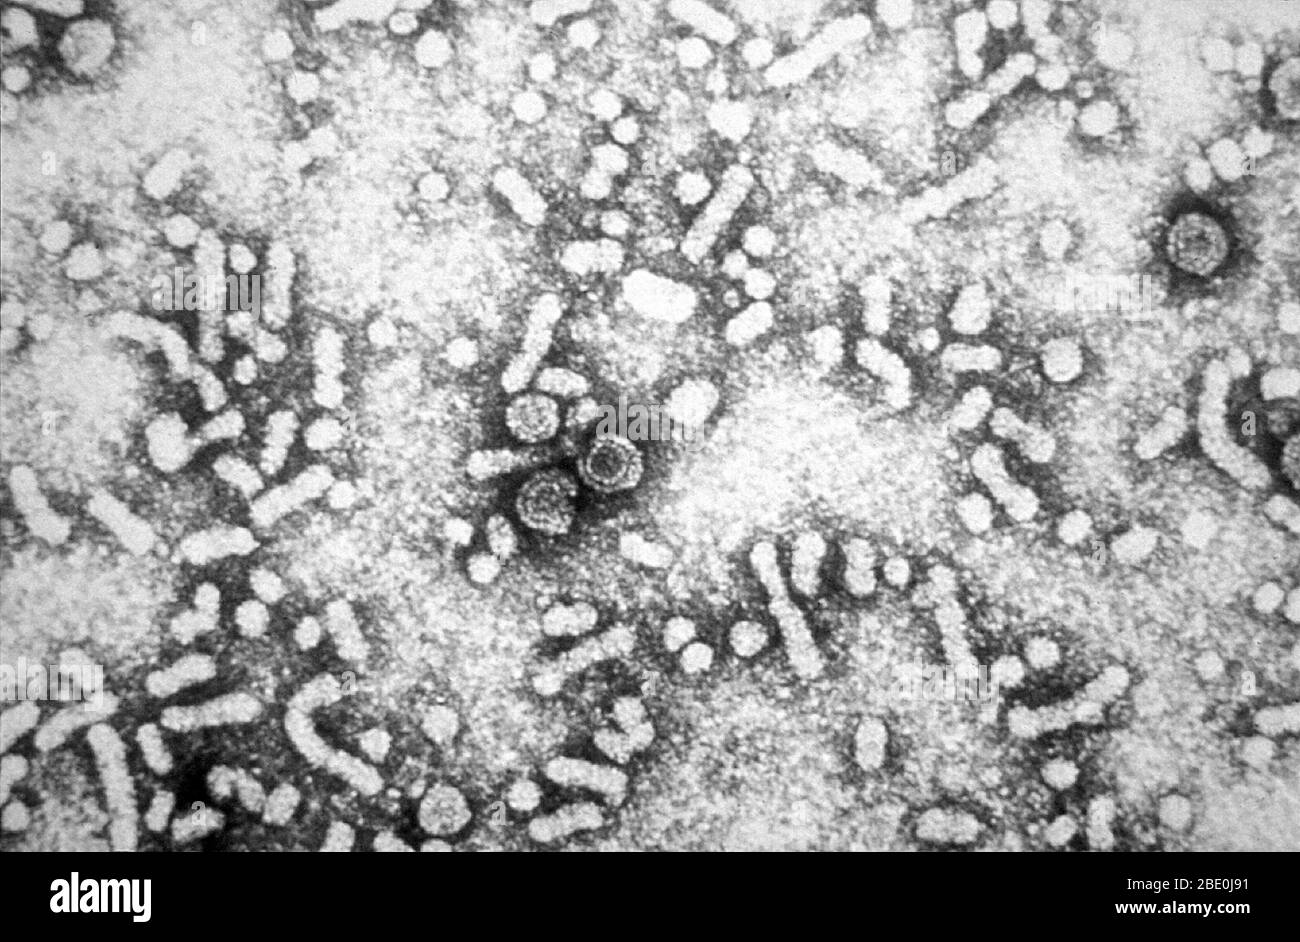 Questa micrografia elettronica rivela la presenza di HBV virus dell'epatite B "particelle di nano", o virioni. I virioni infettivi dell'epatite B (HBV) sono anche noti come particelle di Dane. Queste particelle misurano 42 nm nel loro diametro complessivo, e contengono un nucleo a base di DNA che è 27 nm di diametro. Foto Stock